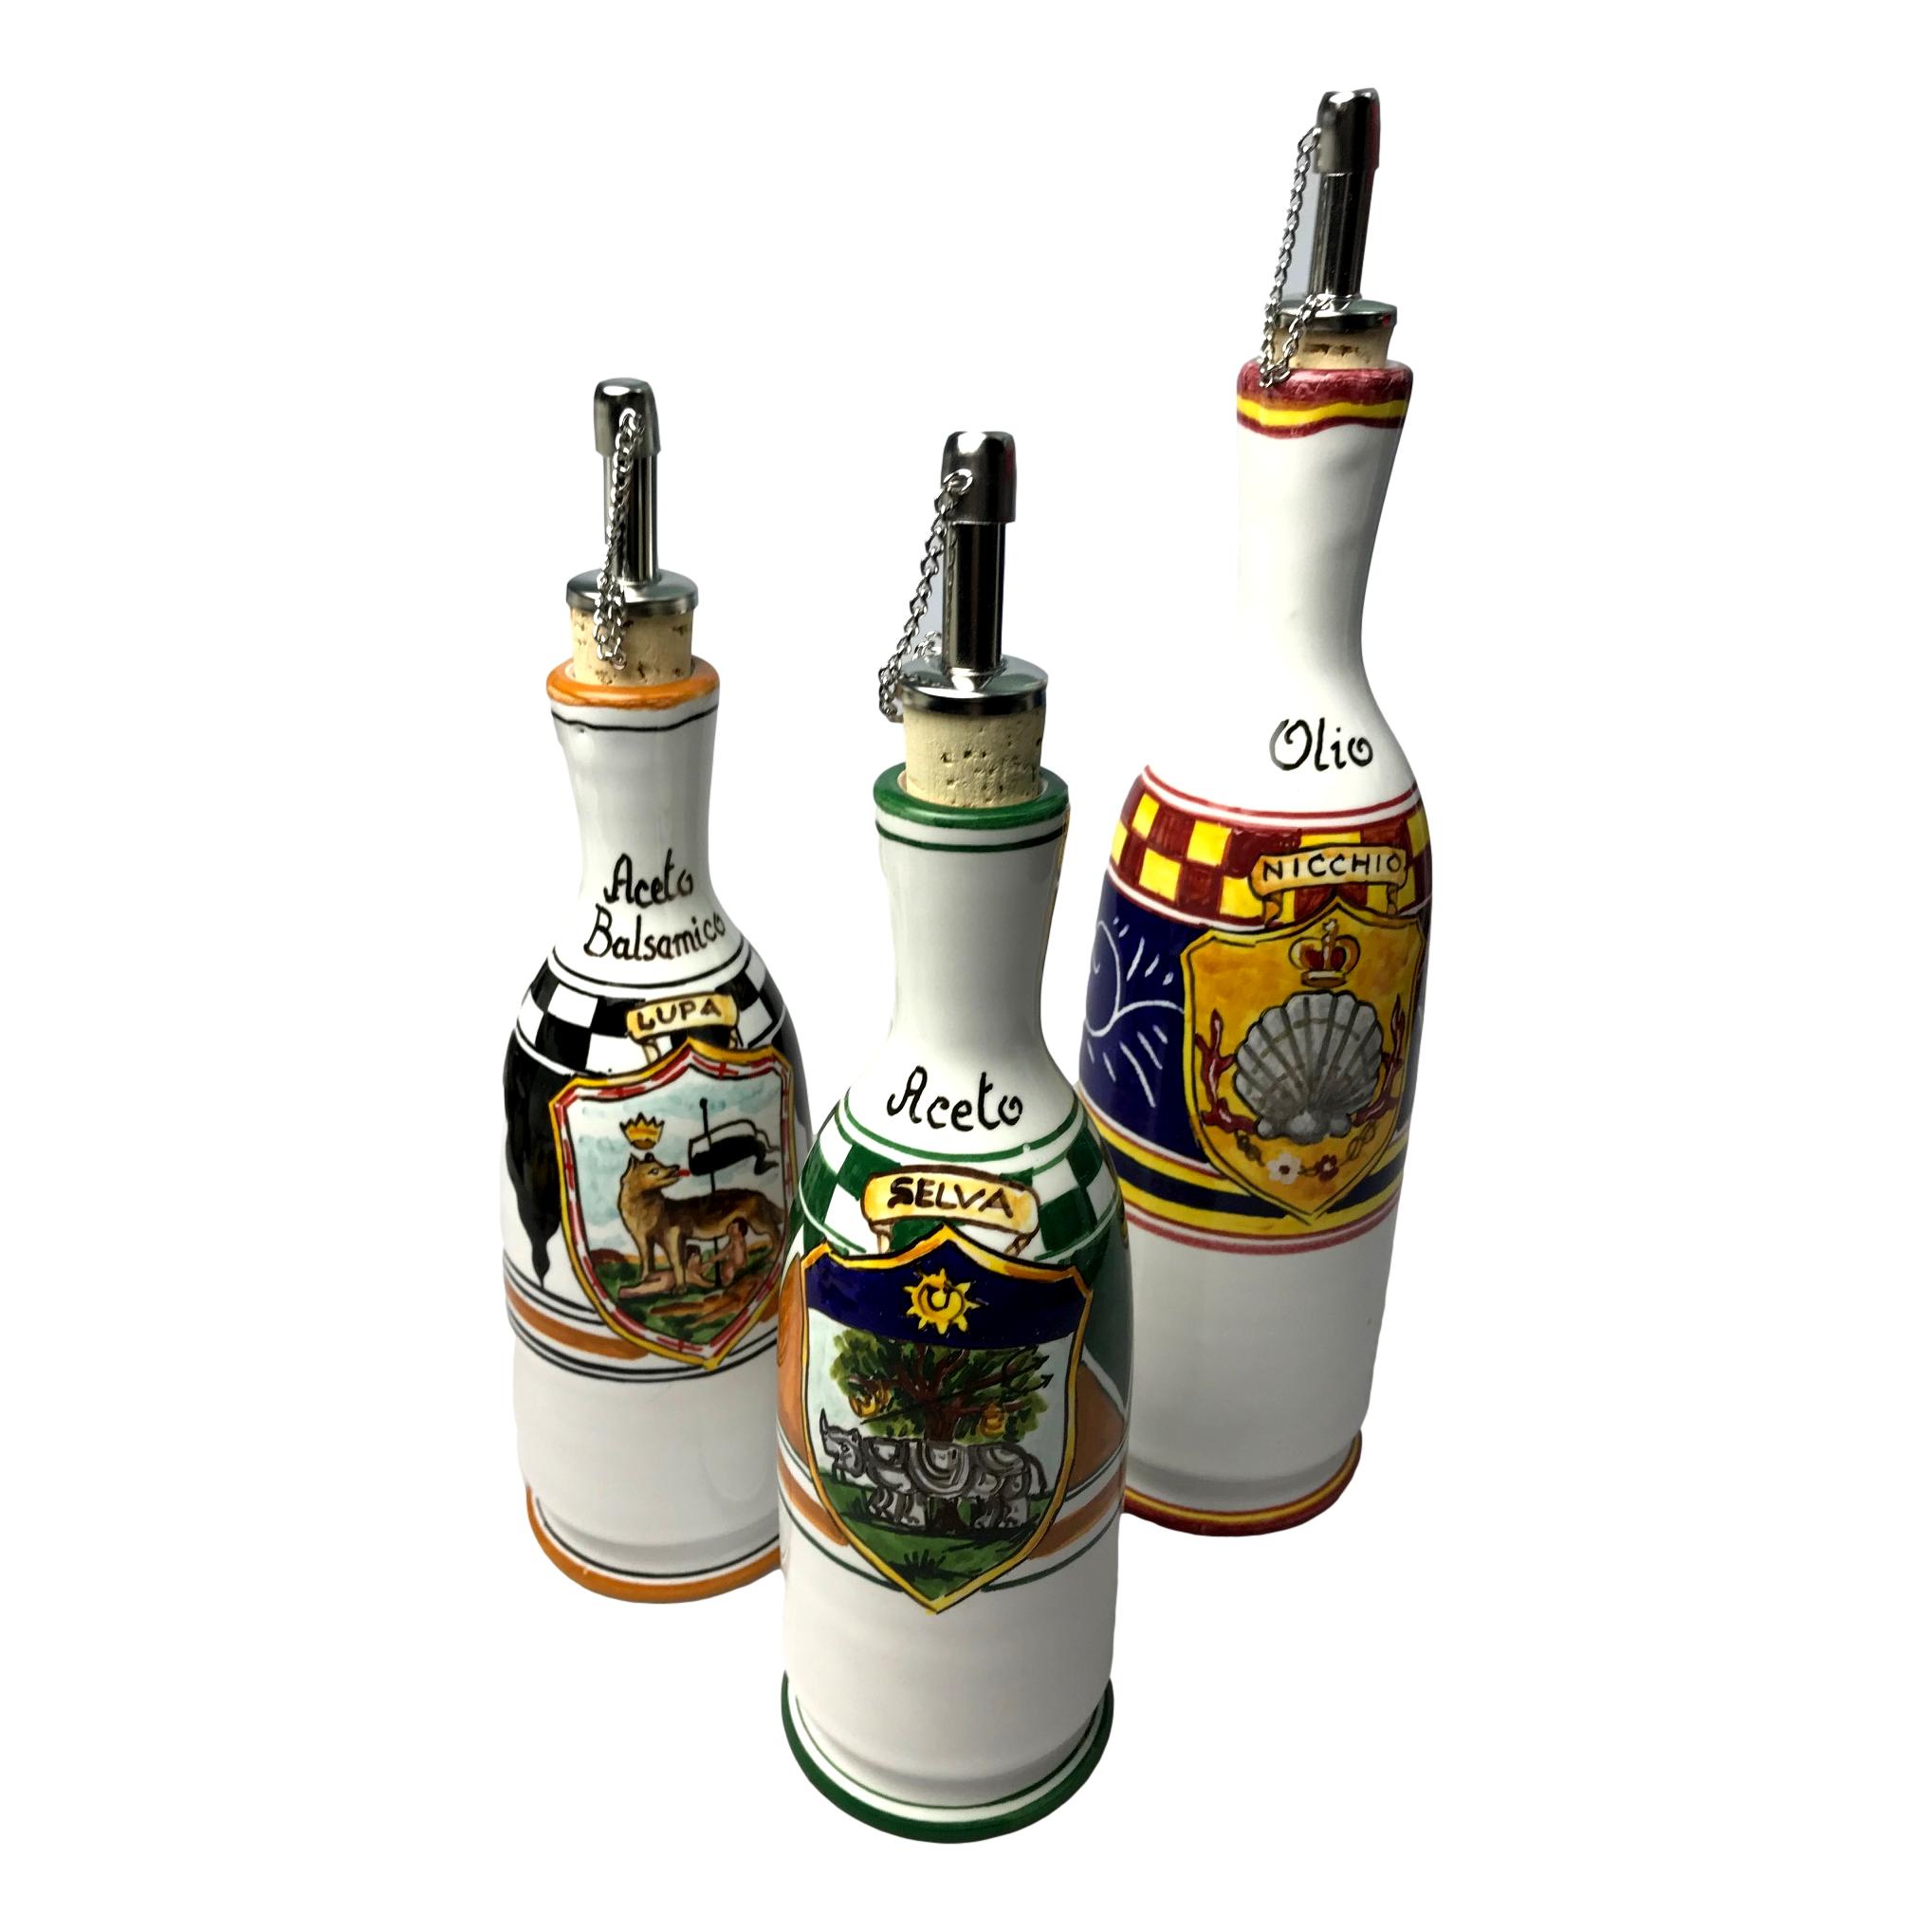 Bottiglia o oliera set per olio, aceto e aceto balsamico in ceramica senese